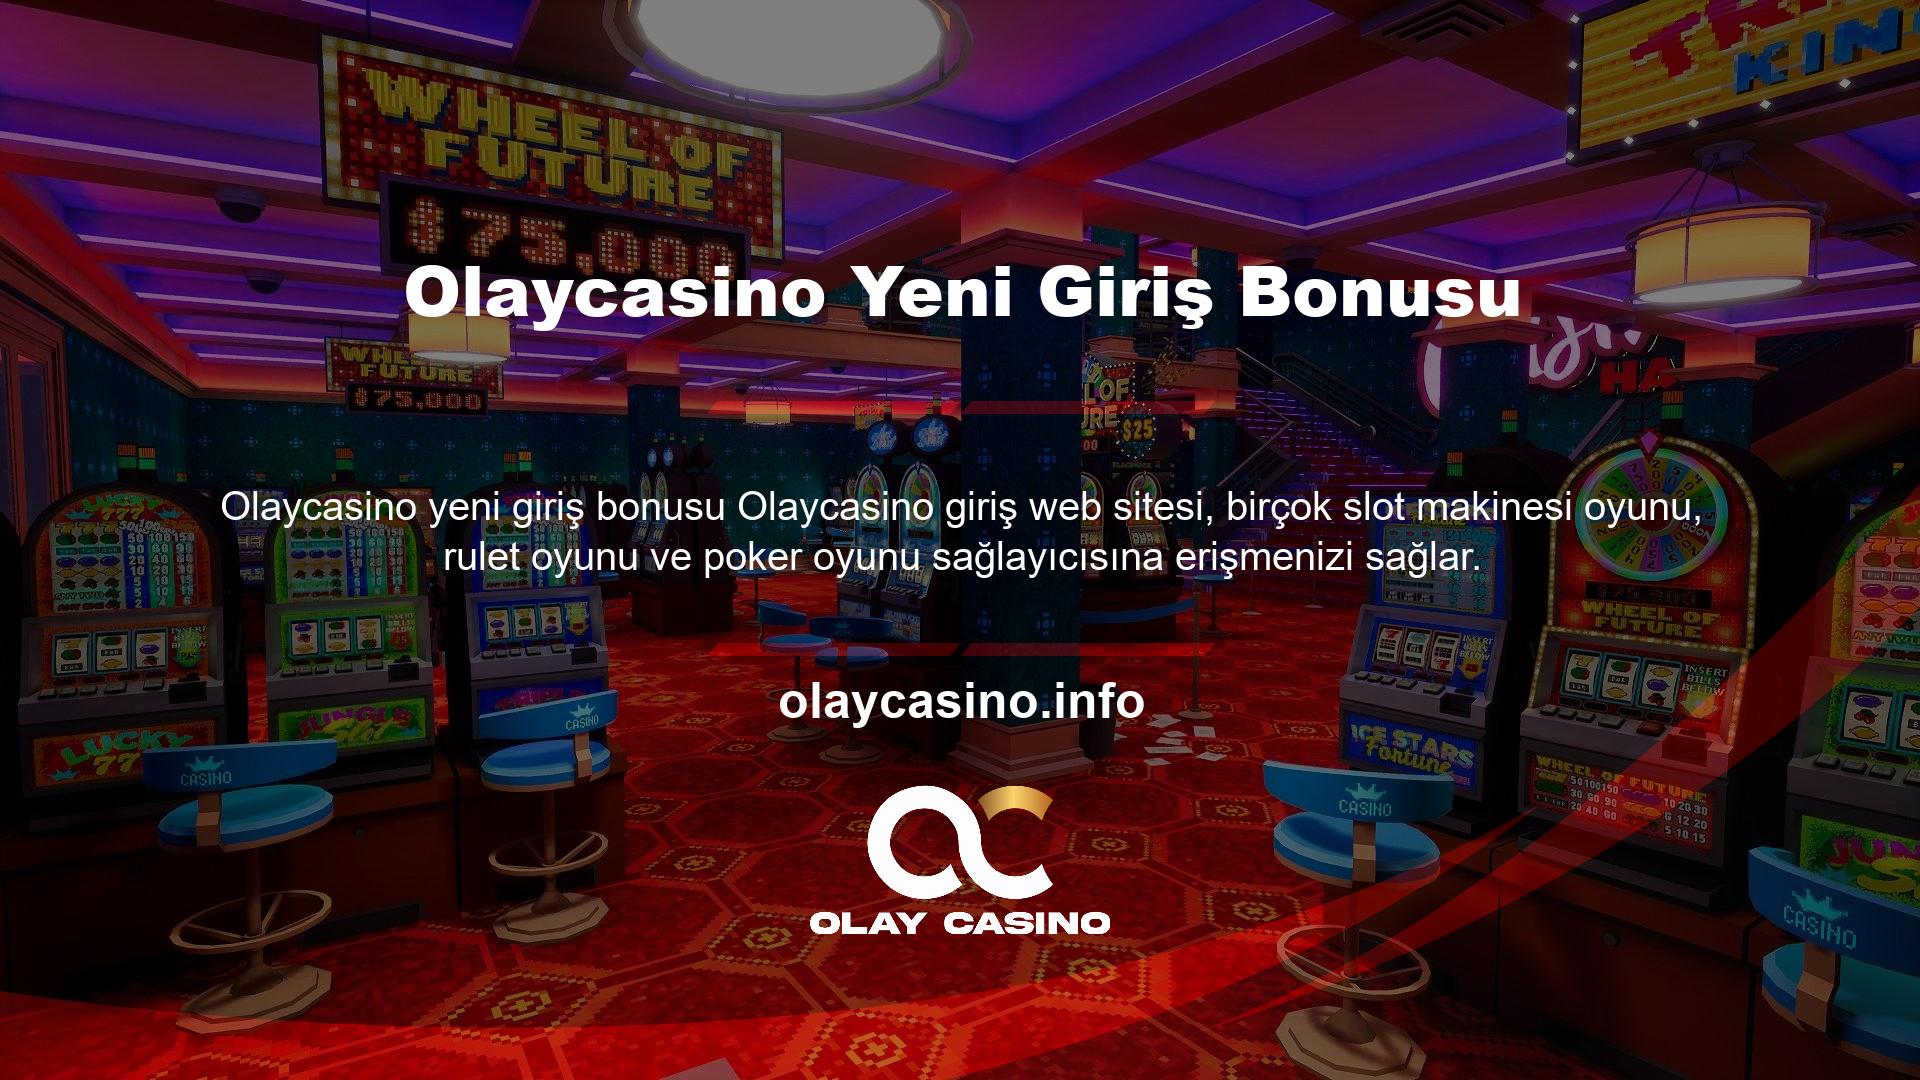 Olaycasino Yeni Giriş Bonusu Ayrıca blackjack oyun sağlayıcılarında bahis oynayarak ve casino oyunlarına erişerek kredi kazanabilirsiniz